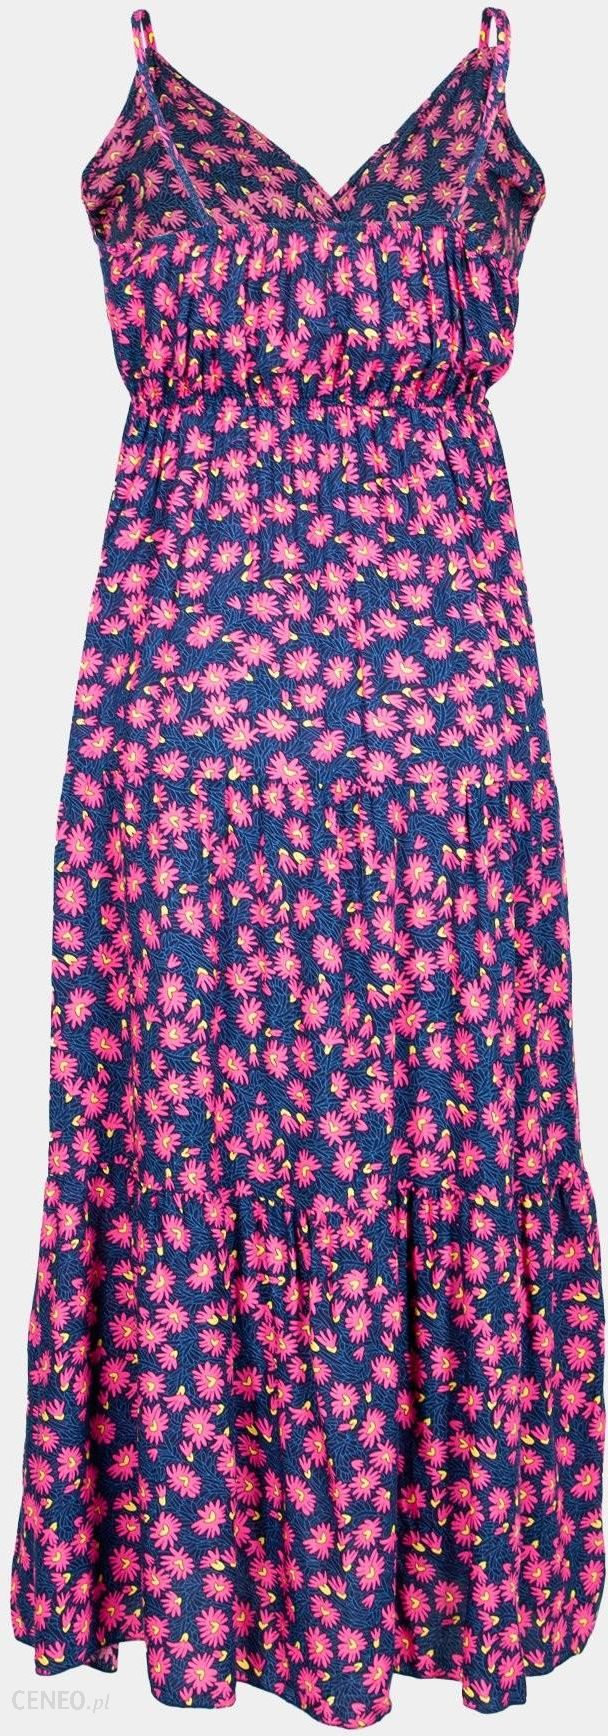 Sukienka damska letnia długa na ramiączka różowe kwiaty : Rozmiar - XL-XXL  - Ceny i opinie 